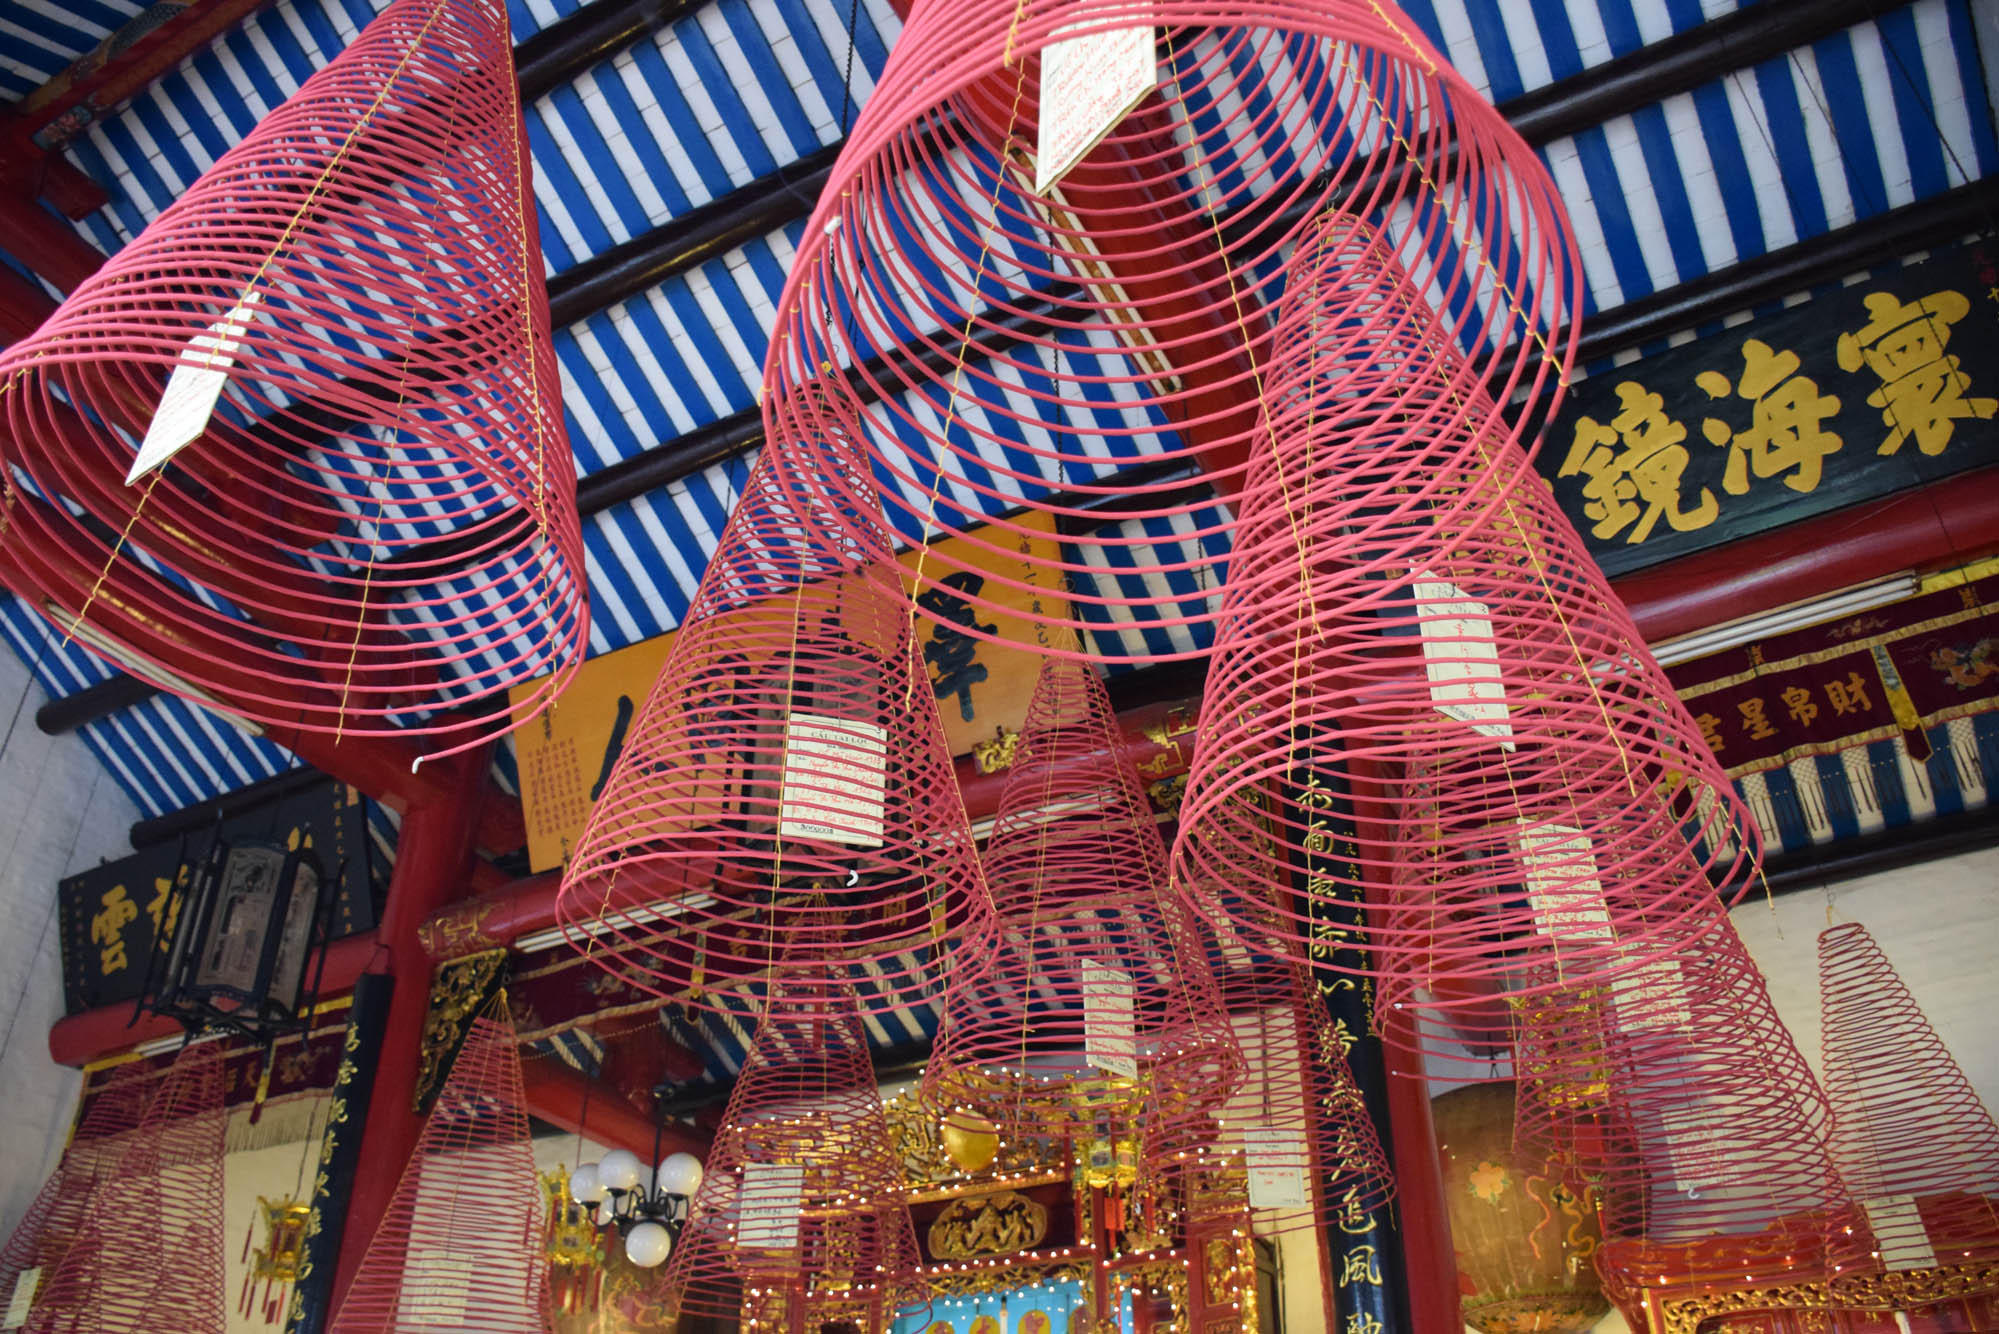 Os incensos em espiral pendurados no teto do templo